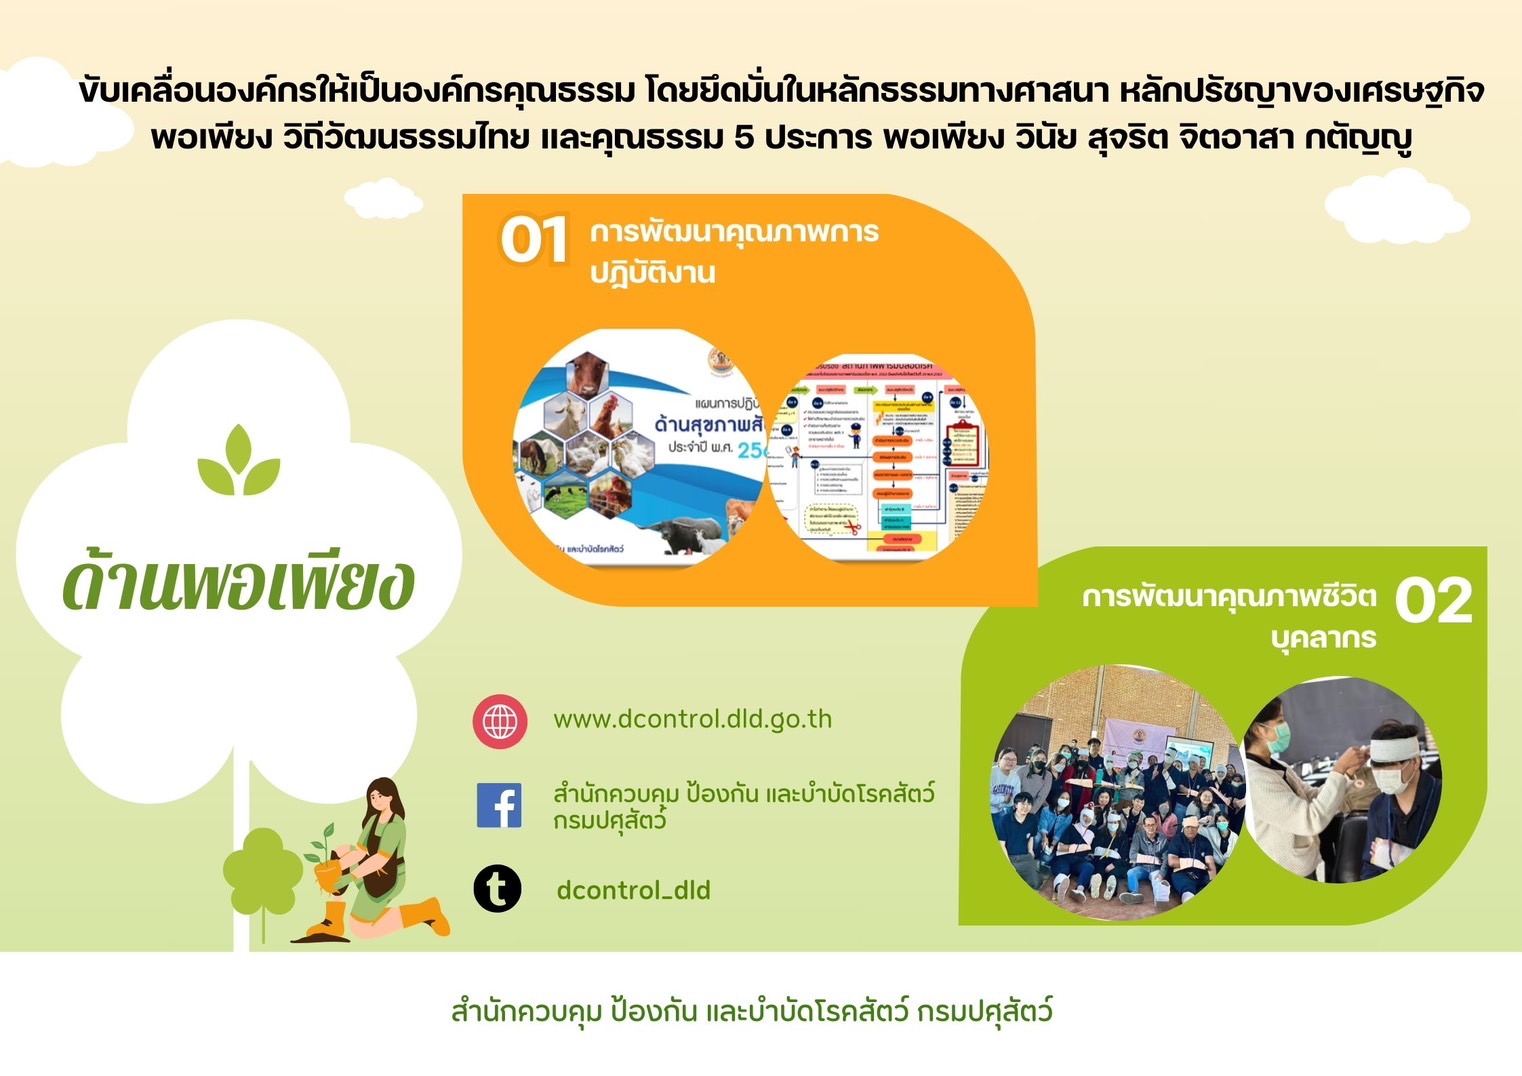 ขับเคลื่อนองค์กรให้เป็นองค์กรคุณธรรม โดยยึดมั่นในหลักธรรมทางศาสนา หลักปรัชญาของเศรษฐกิจพอเพียง วิถีวัฒนธรรมไทย และคุณธรรม 5 ประการ พอเพียง วินัย สุจริต จิตอาสา กตัญญู